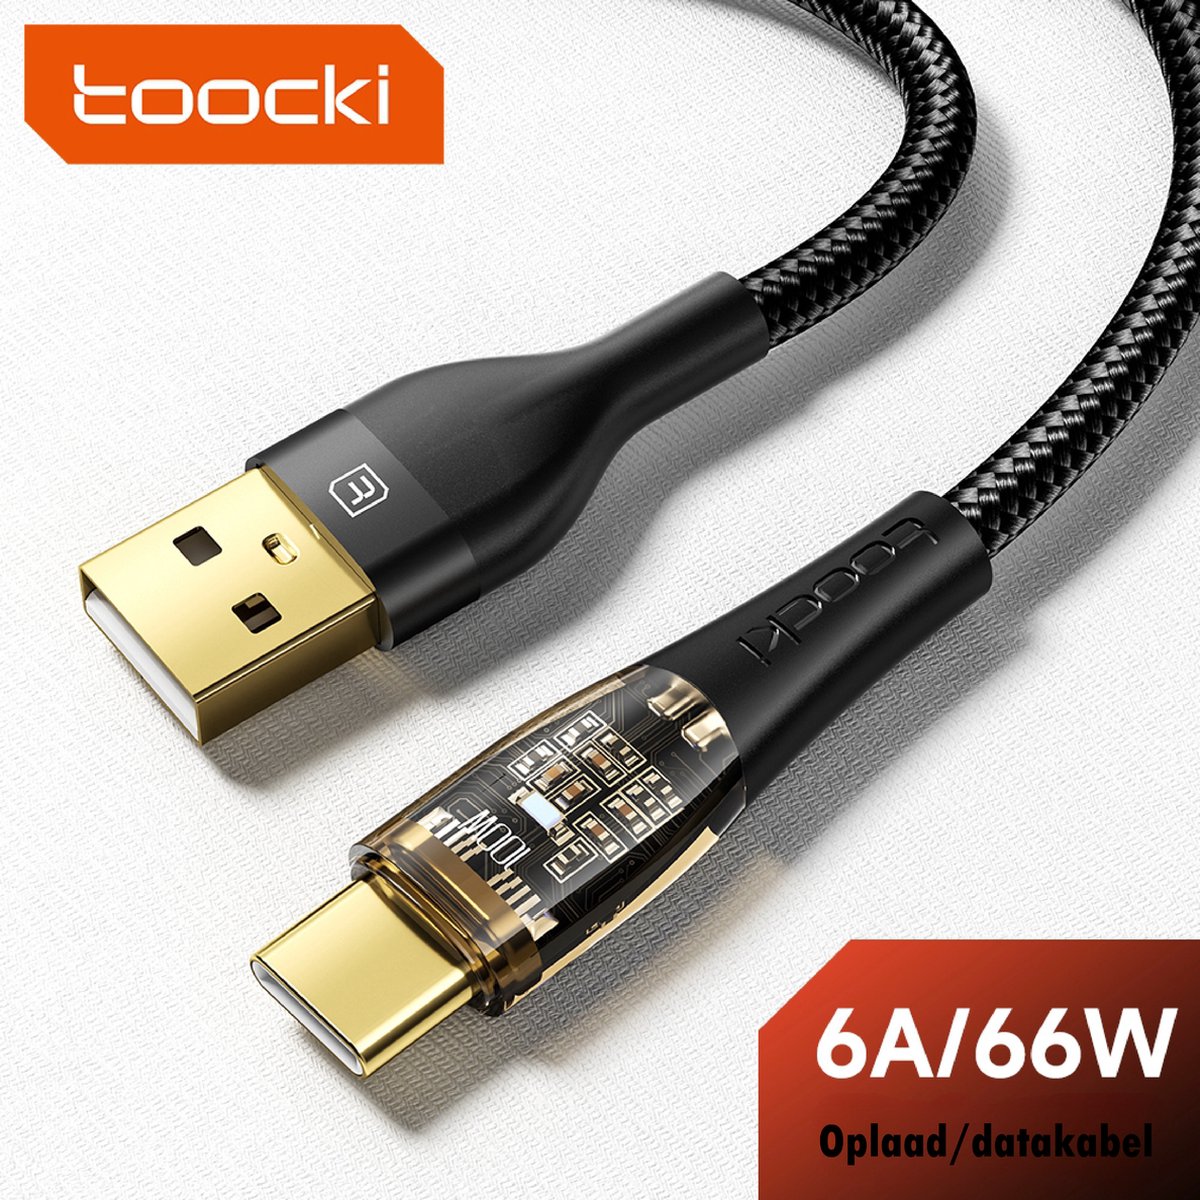 Toocki Usb C Kabel 2.0 - Ultra Fast Charging - Oplaadkabel USB-A naar USB-C - 6A - 1 Meter - Nieuw Design - Apple MacBook/iPad, Samsung Galaxy/Note, OnePlus - Tot 8 Keer Sneller - Nylon - Zwart